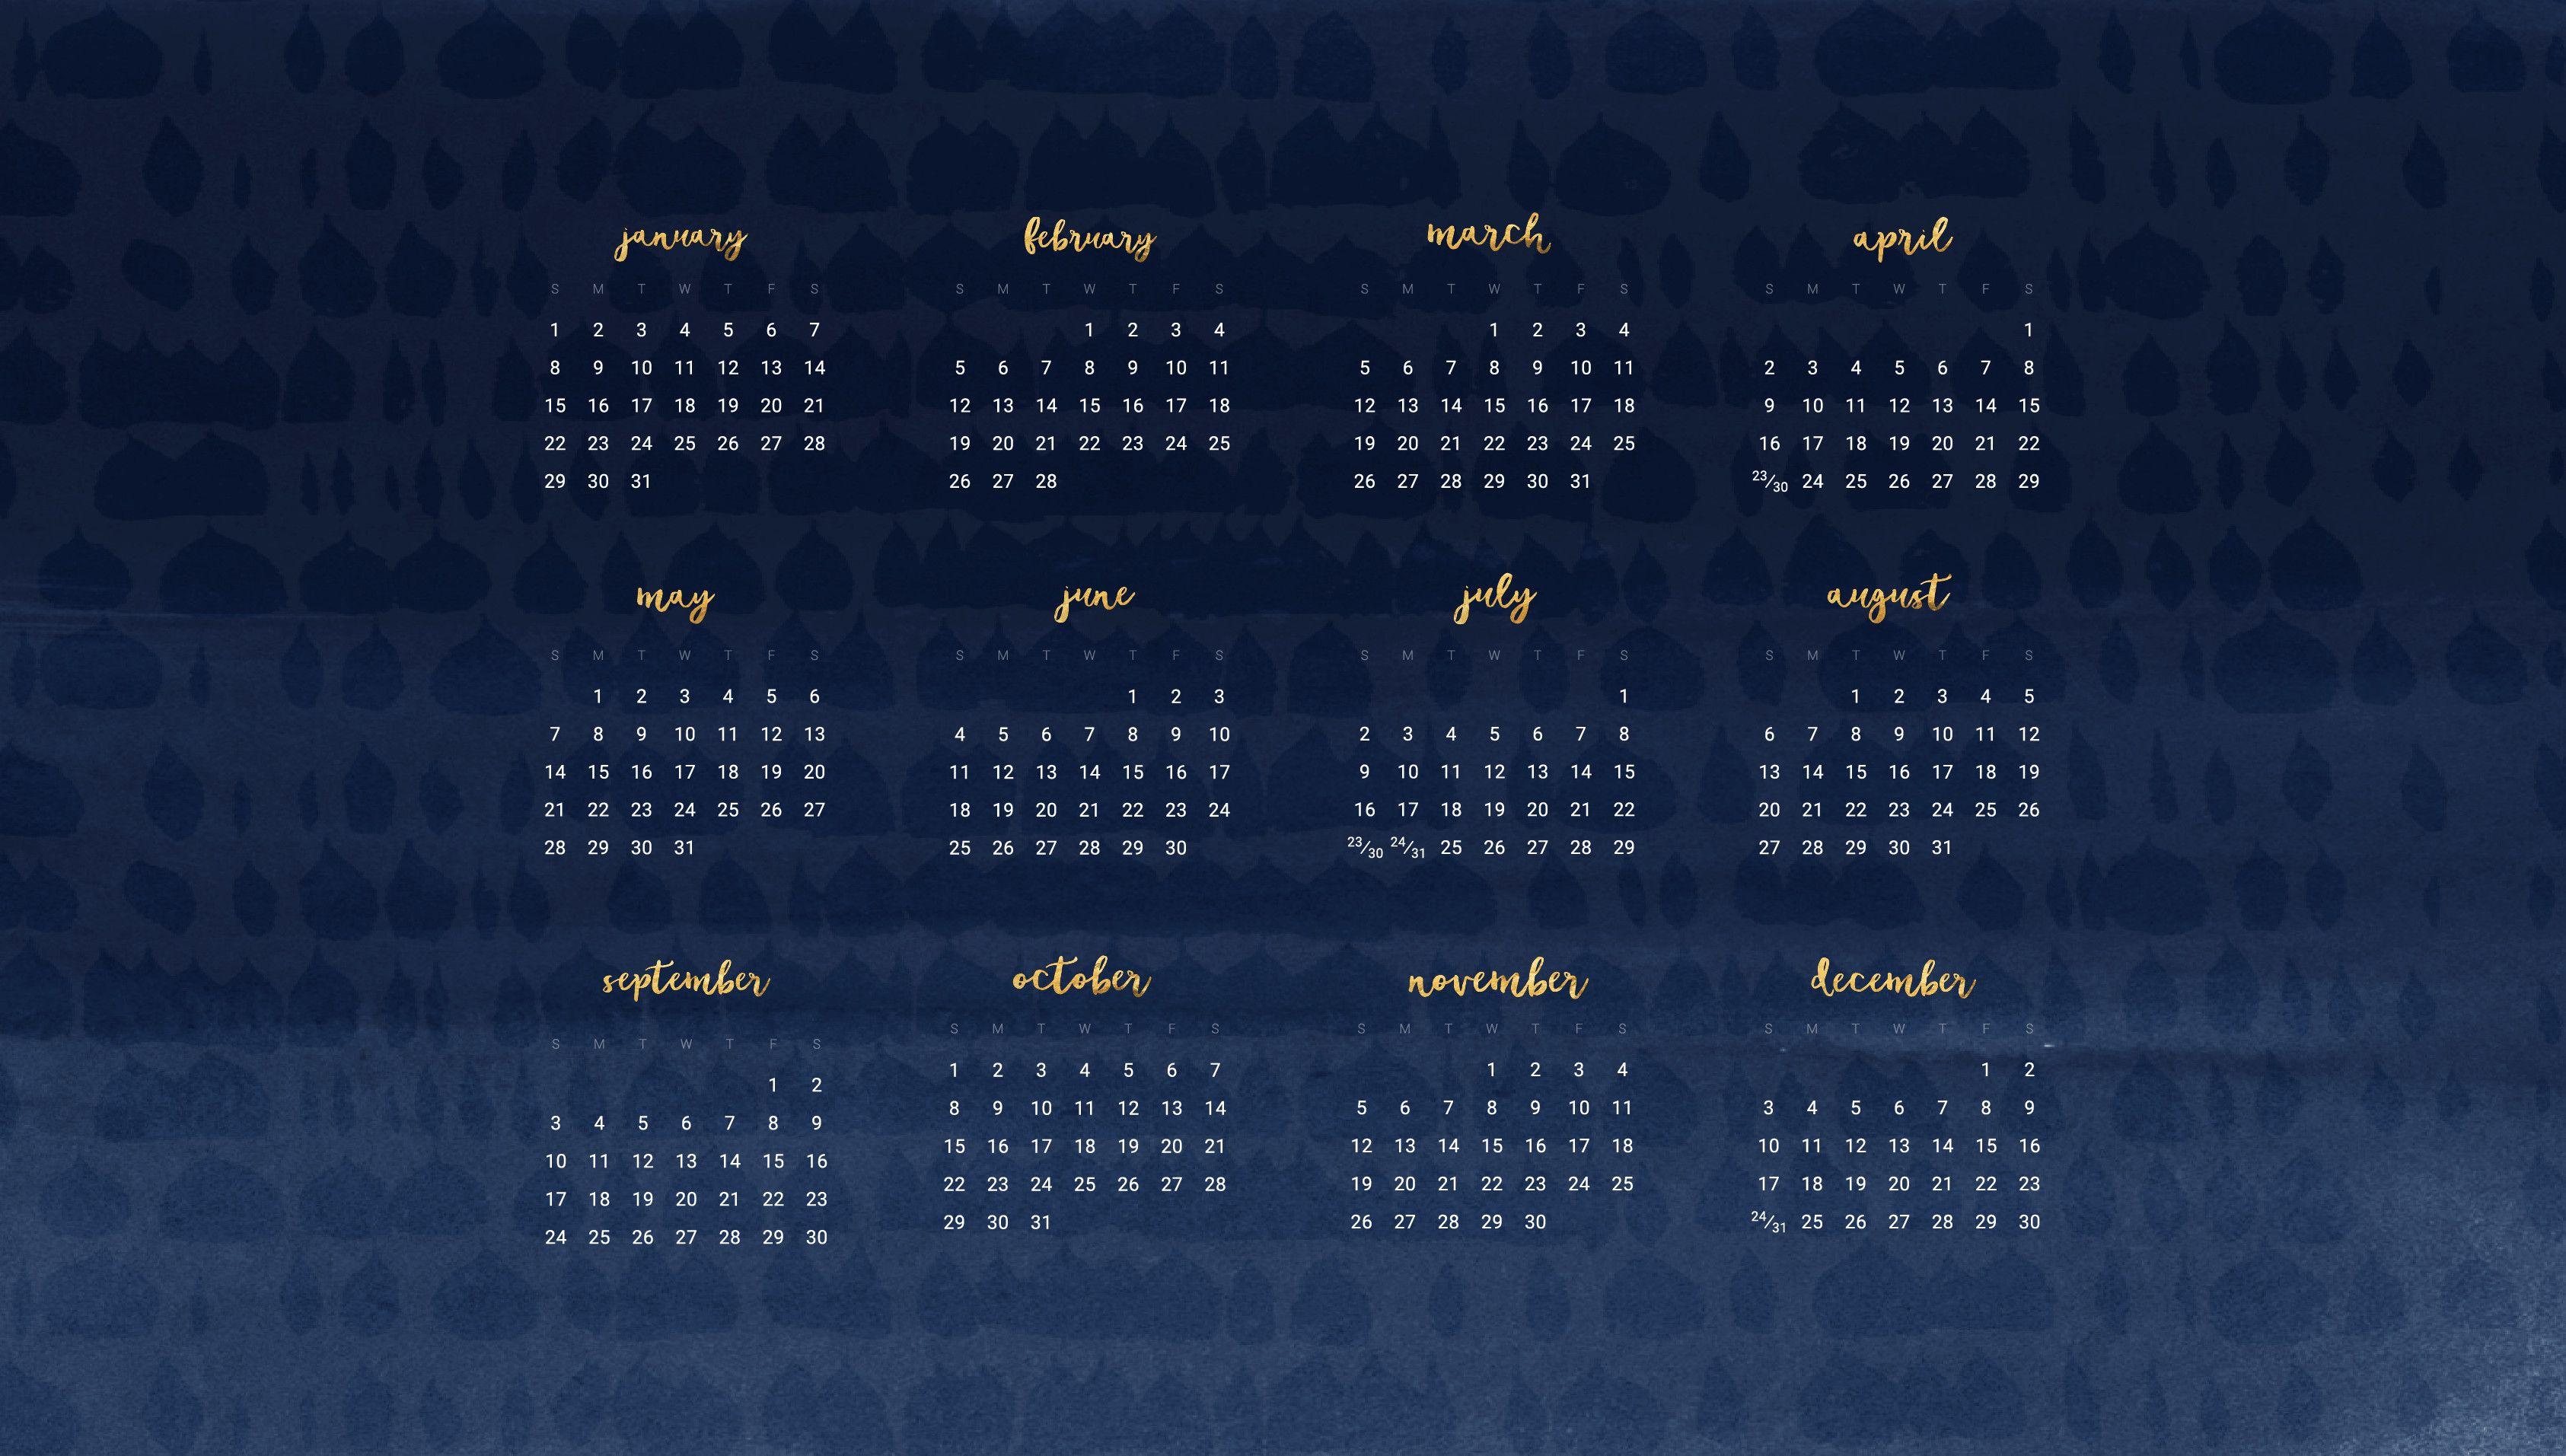 Wallpaper Calendars for 2018